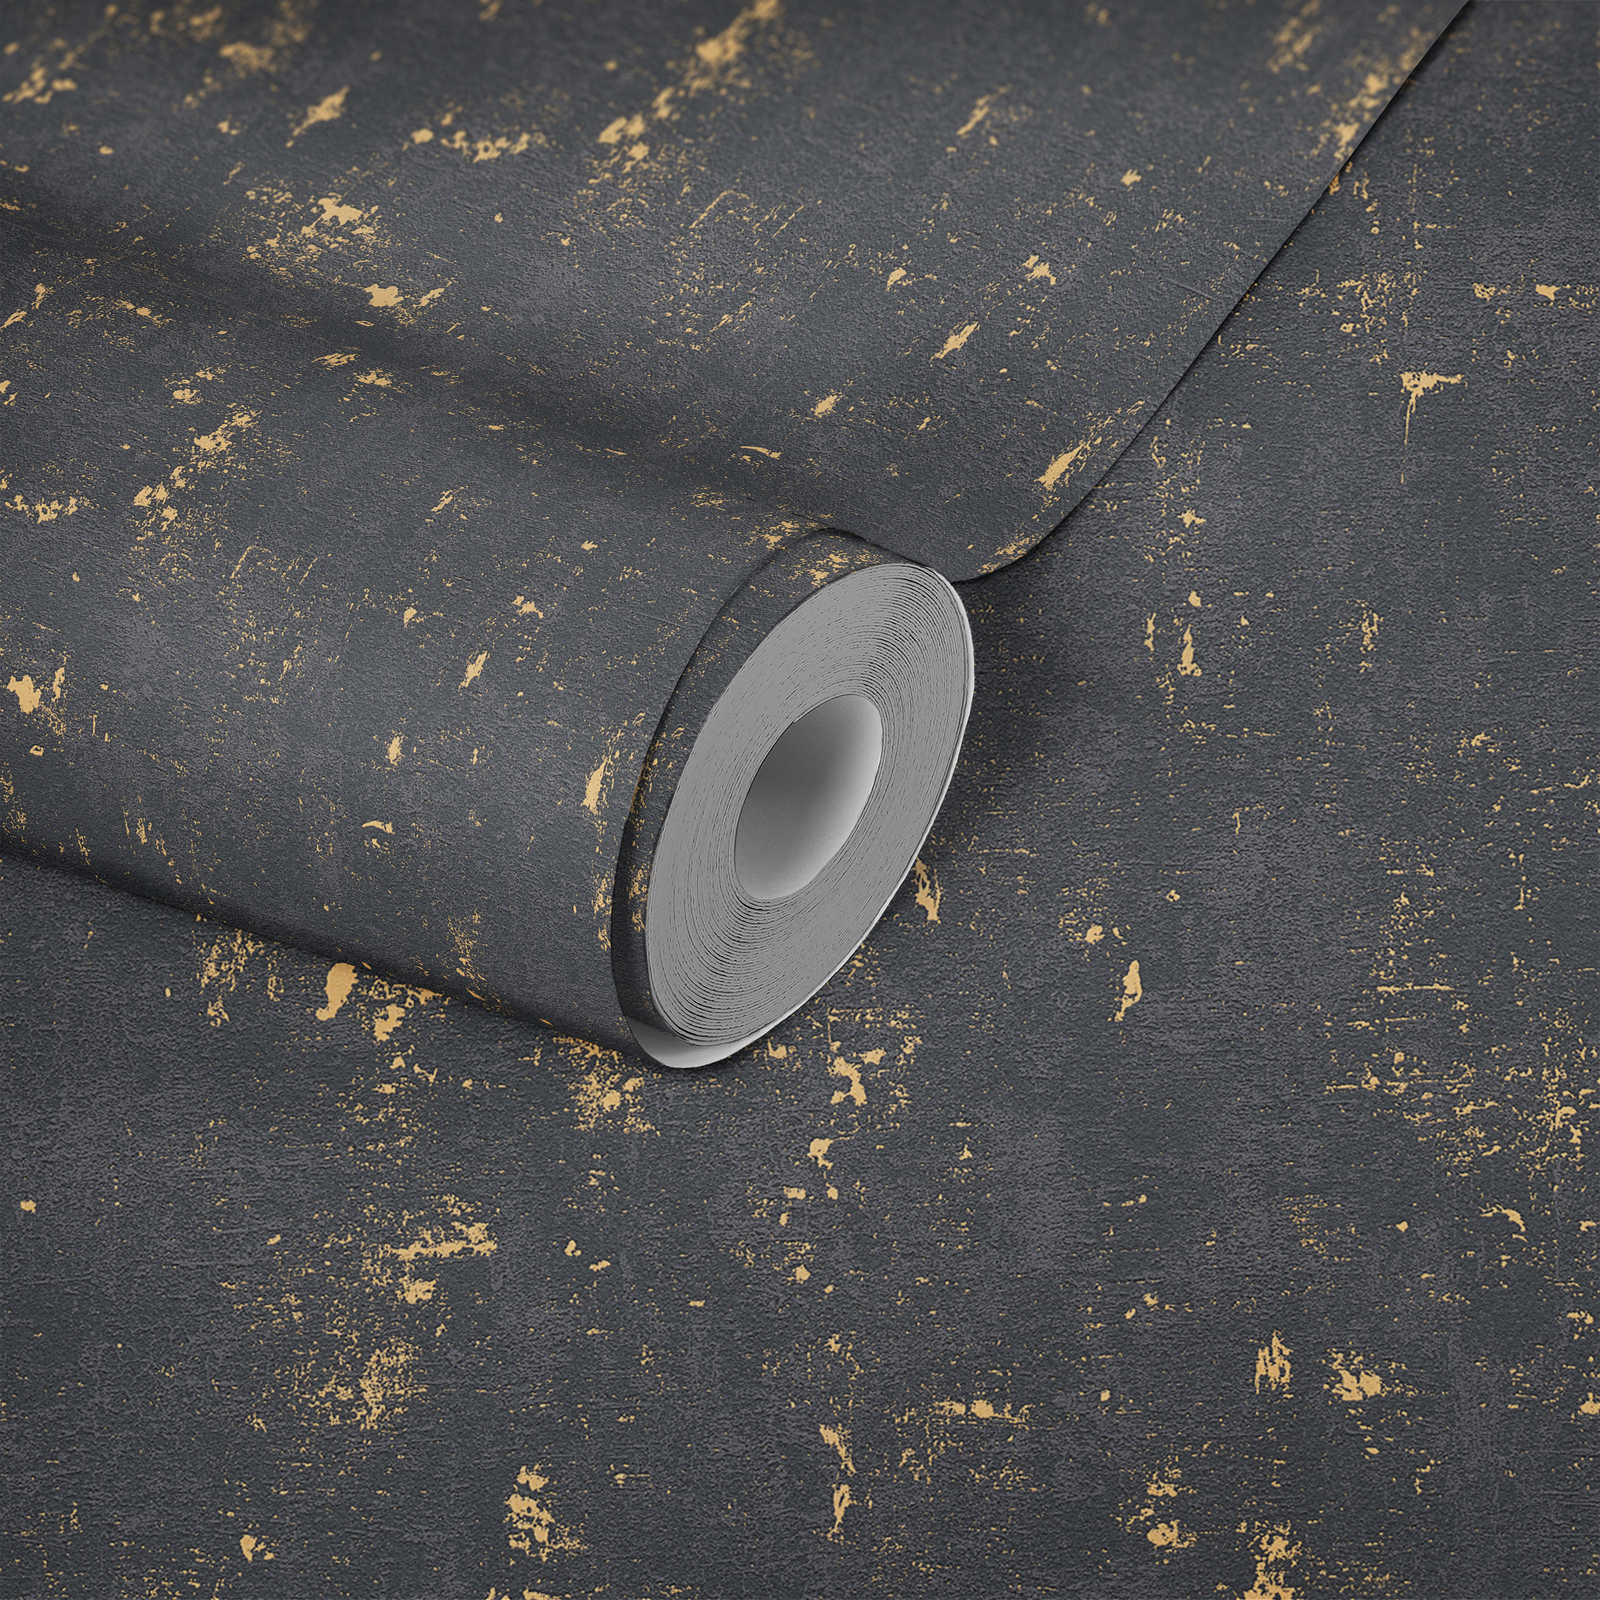             Gebruikt behang met metallic effect - zwart, goud
        